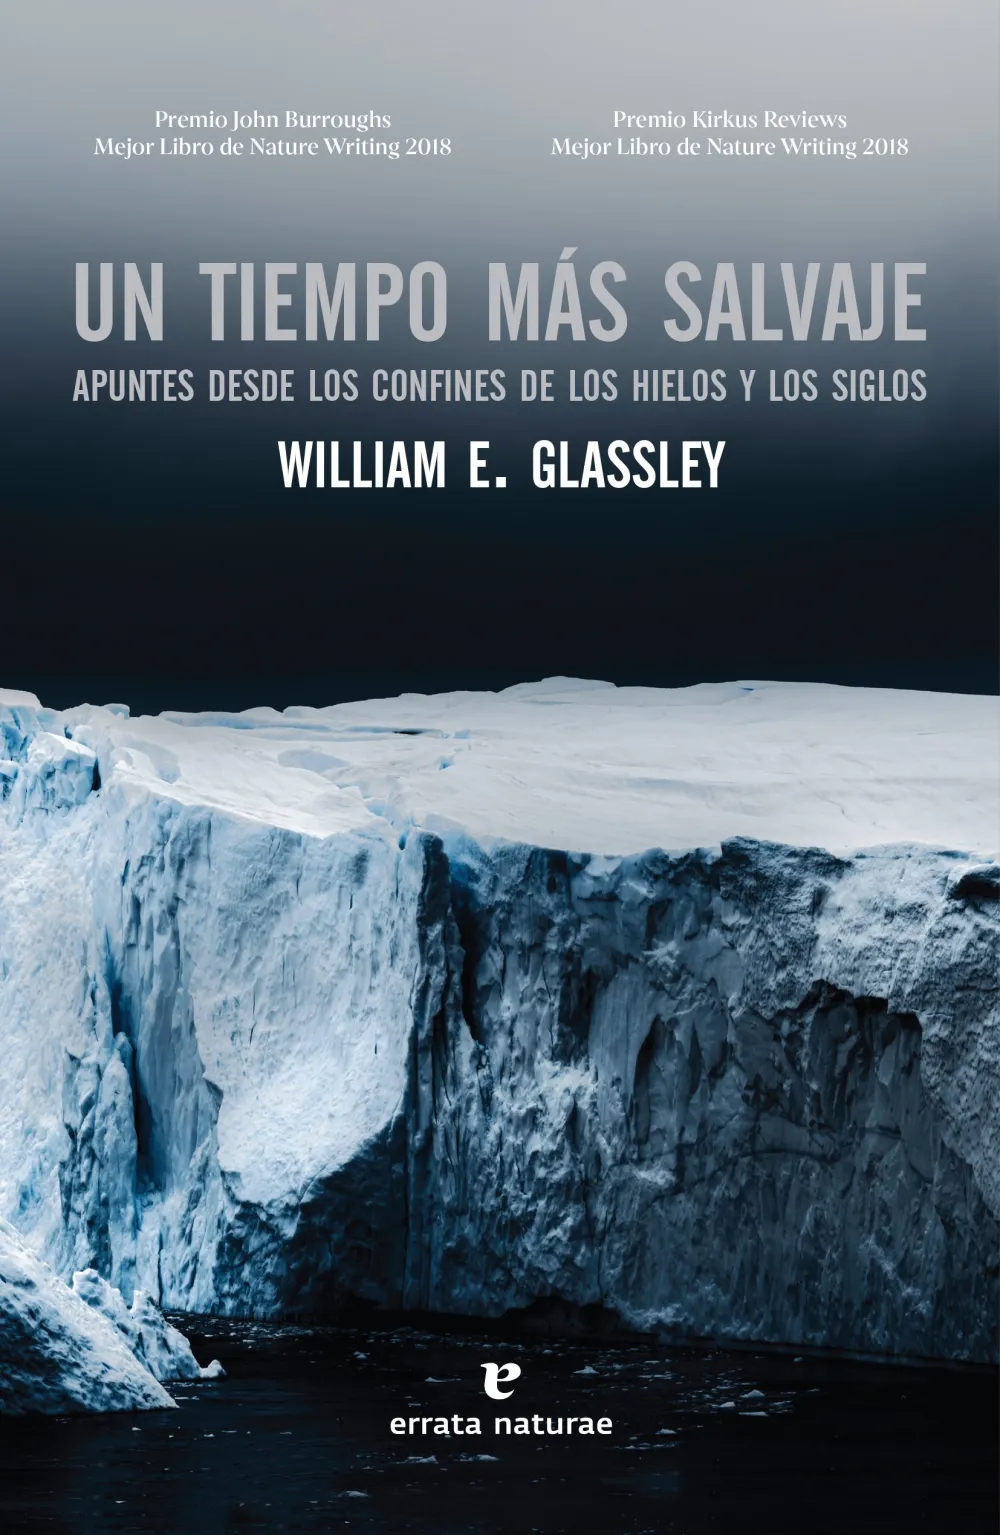 Un tiempo más salvaje. Apuntes desde los confines de los hielos y los siglos. William E. Glassley.